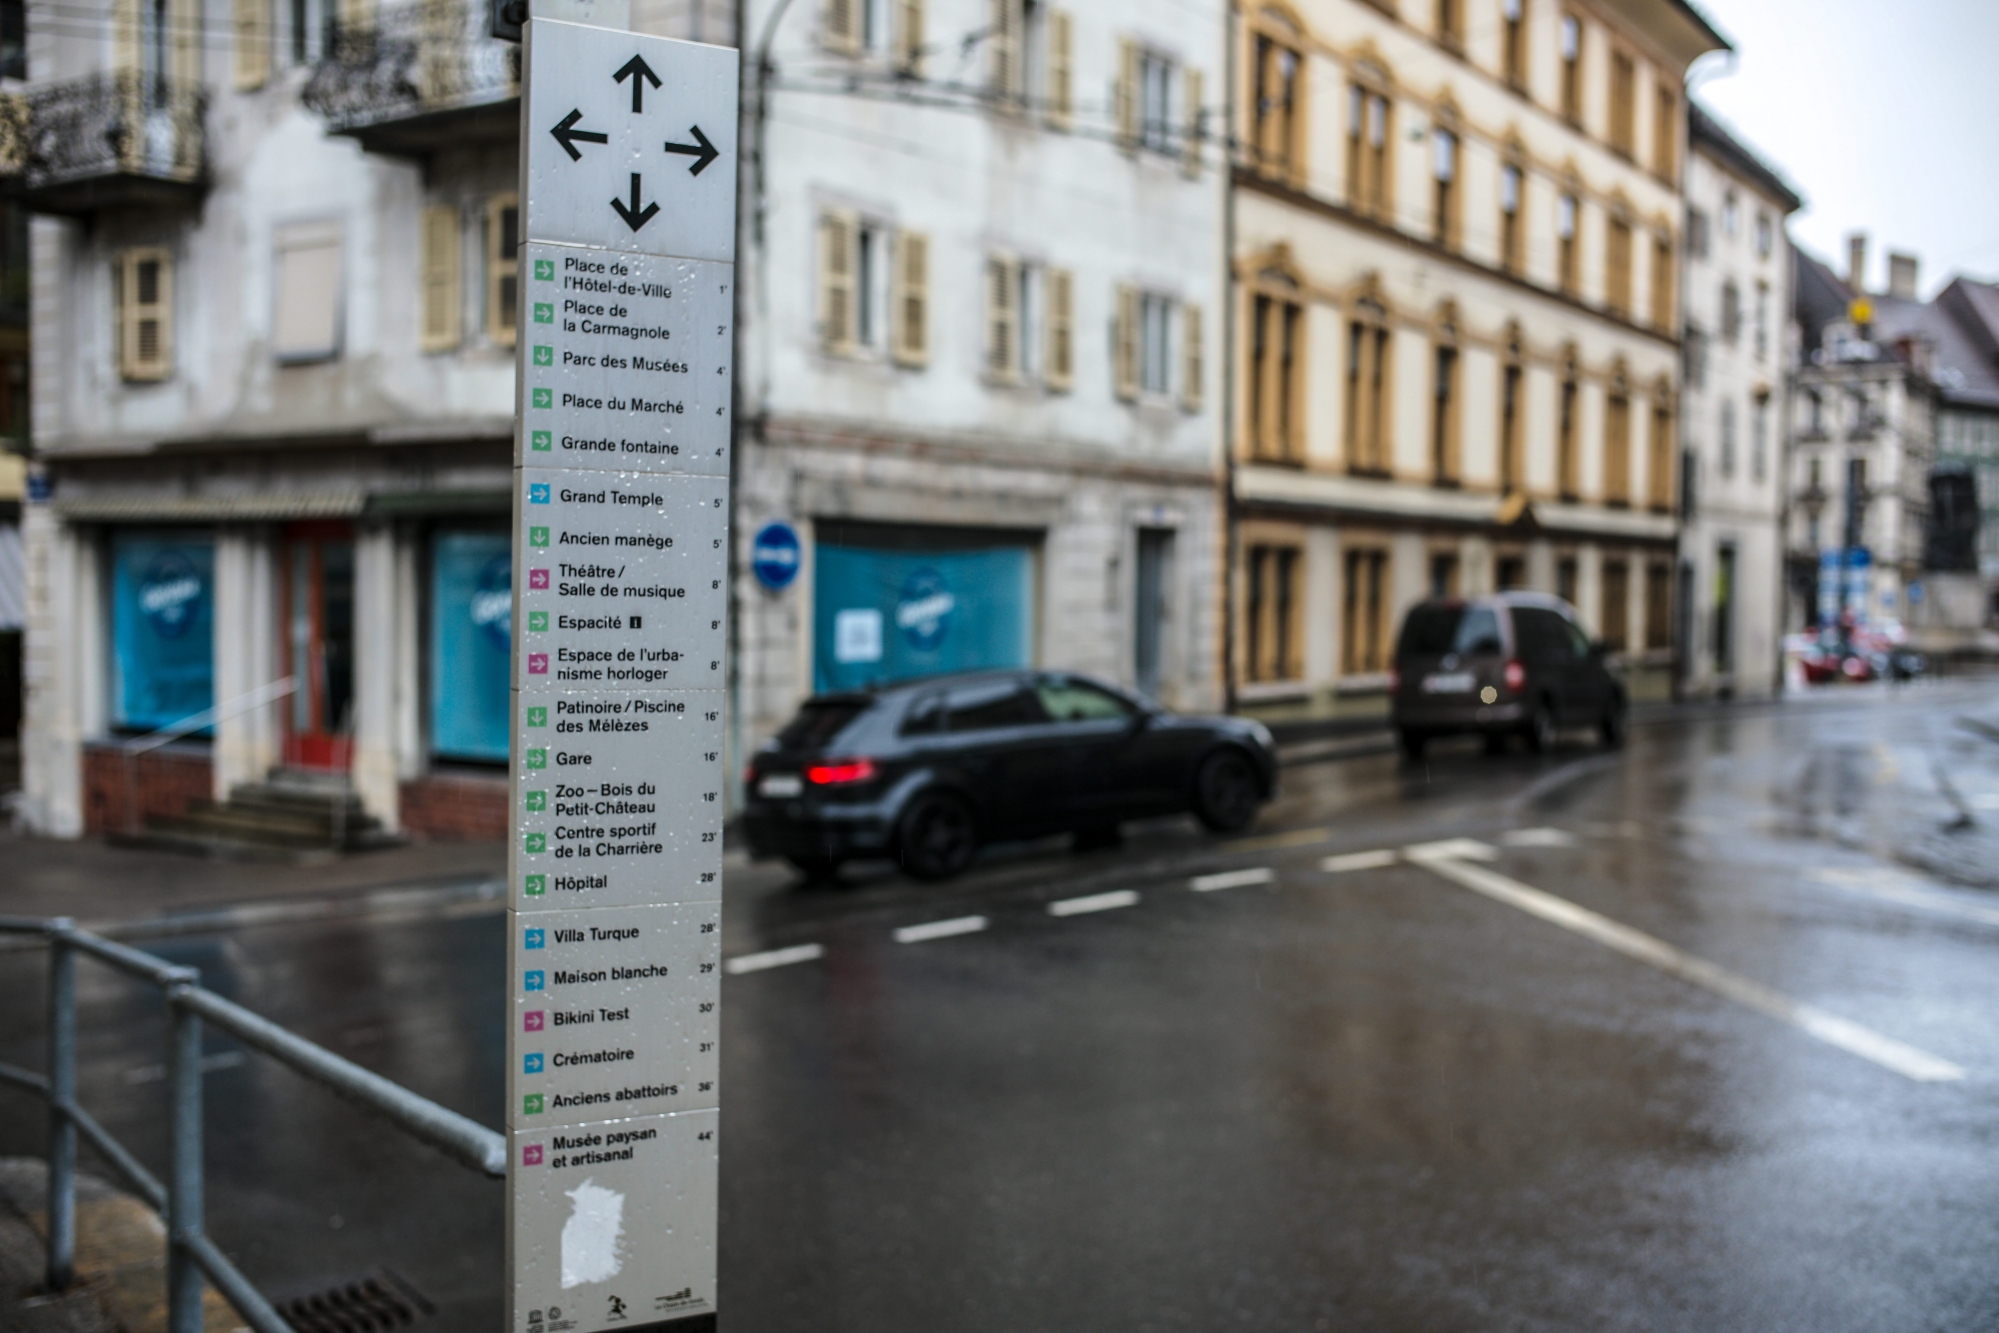 Le totem de signalisation piétonne au bas de la rue du Grenier à La Chaux-de-Fonds qui a rendu perplexe une internaute.